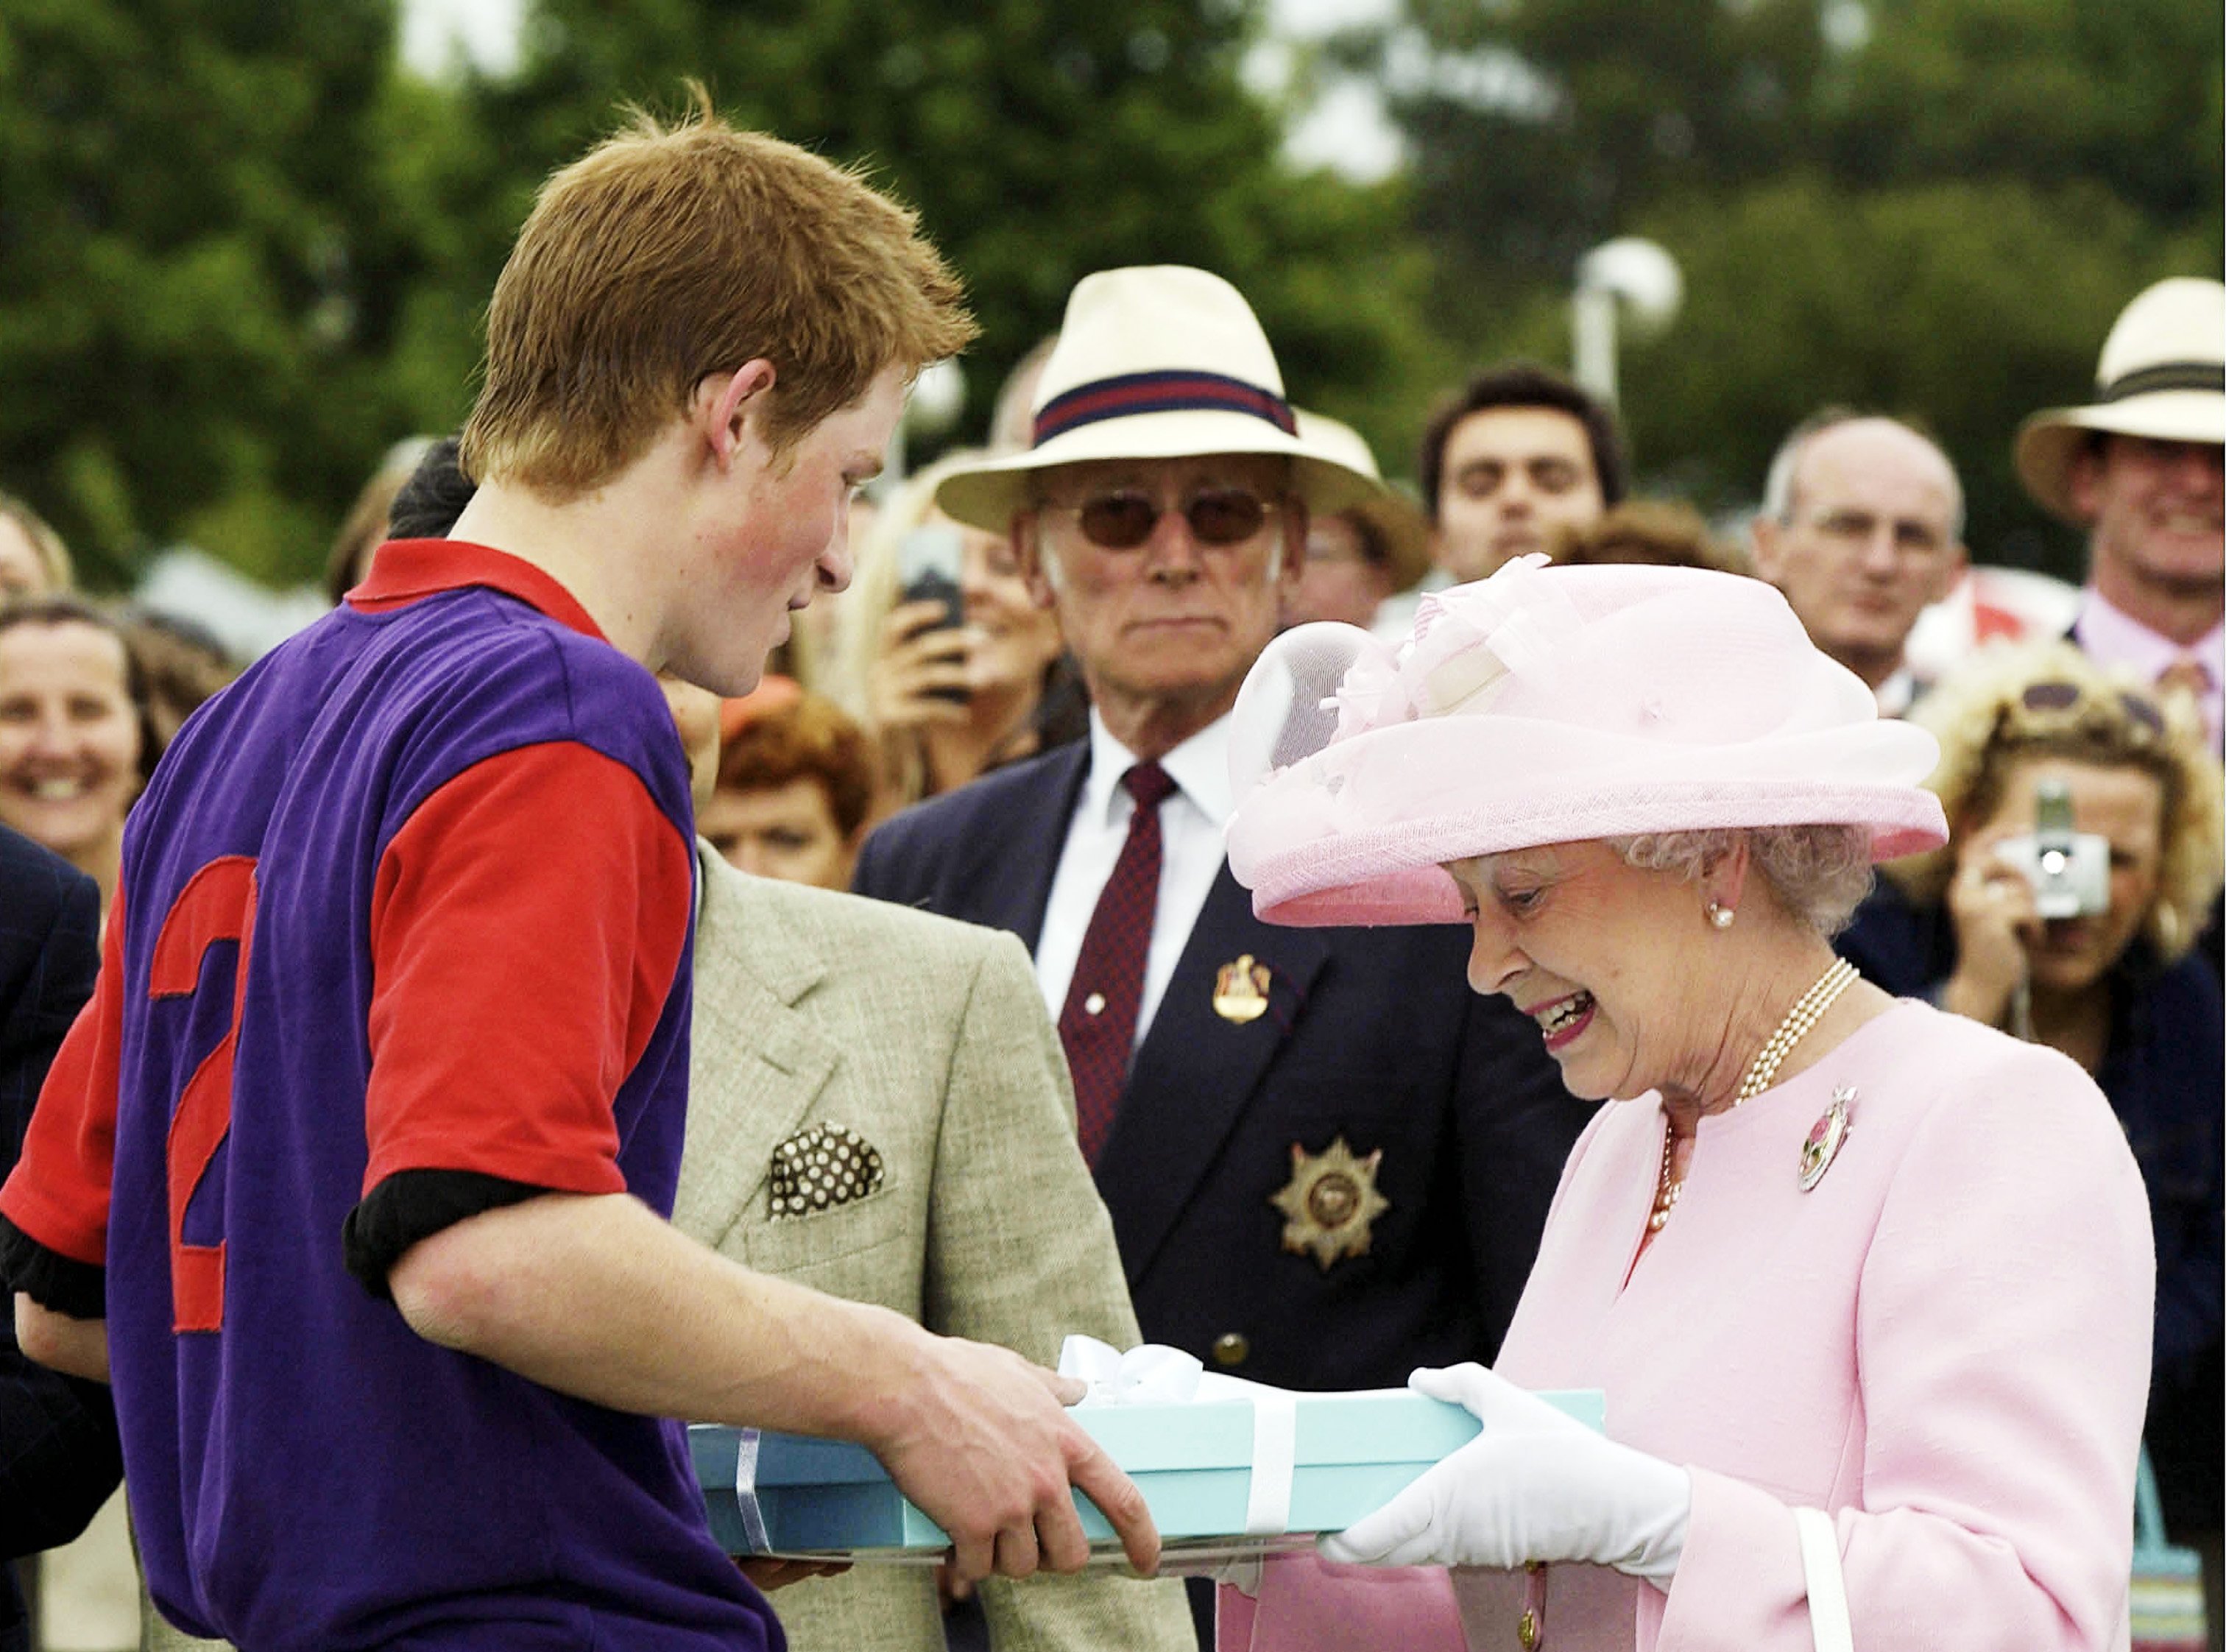 La reina Elizabeth II haciendo una presentación al príncipe Harry después de un partido de polo durante el Royal Ascot, el 18 de junio de 2003 en Windsor, Inglaterra. | Foto: Getty Images